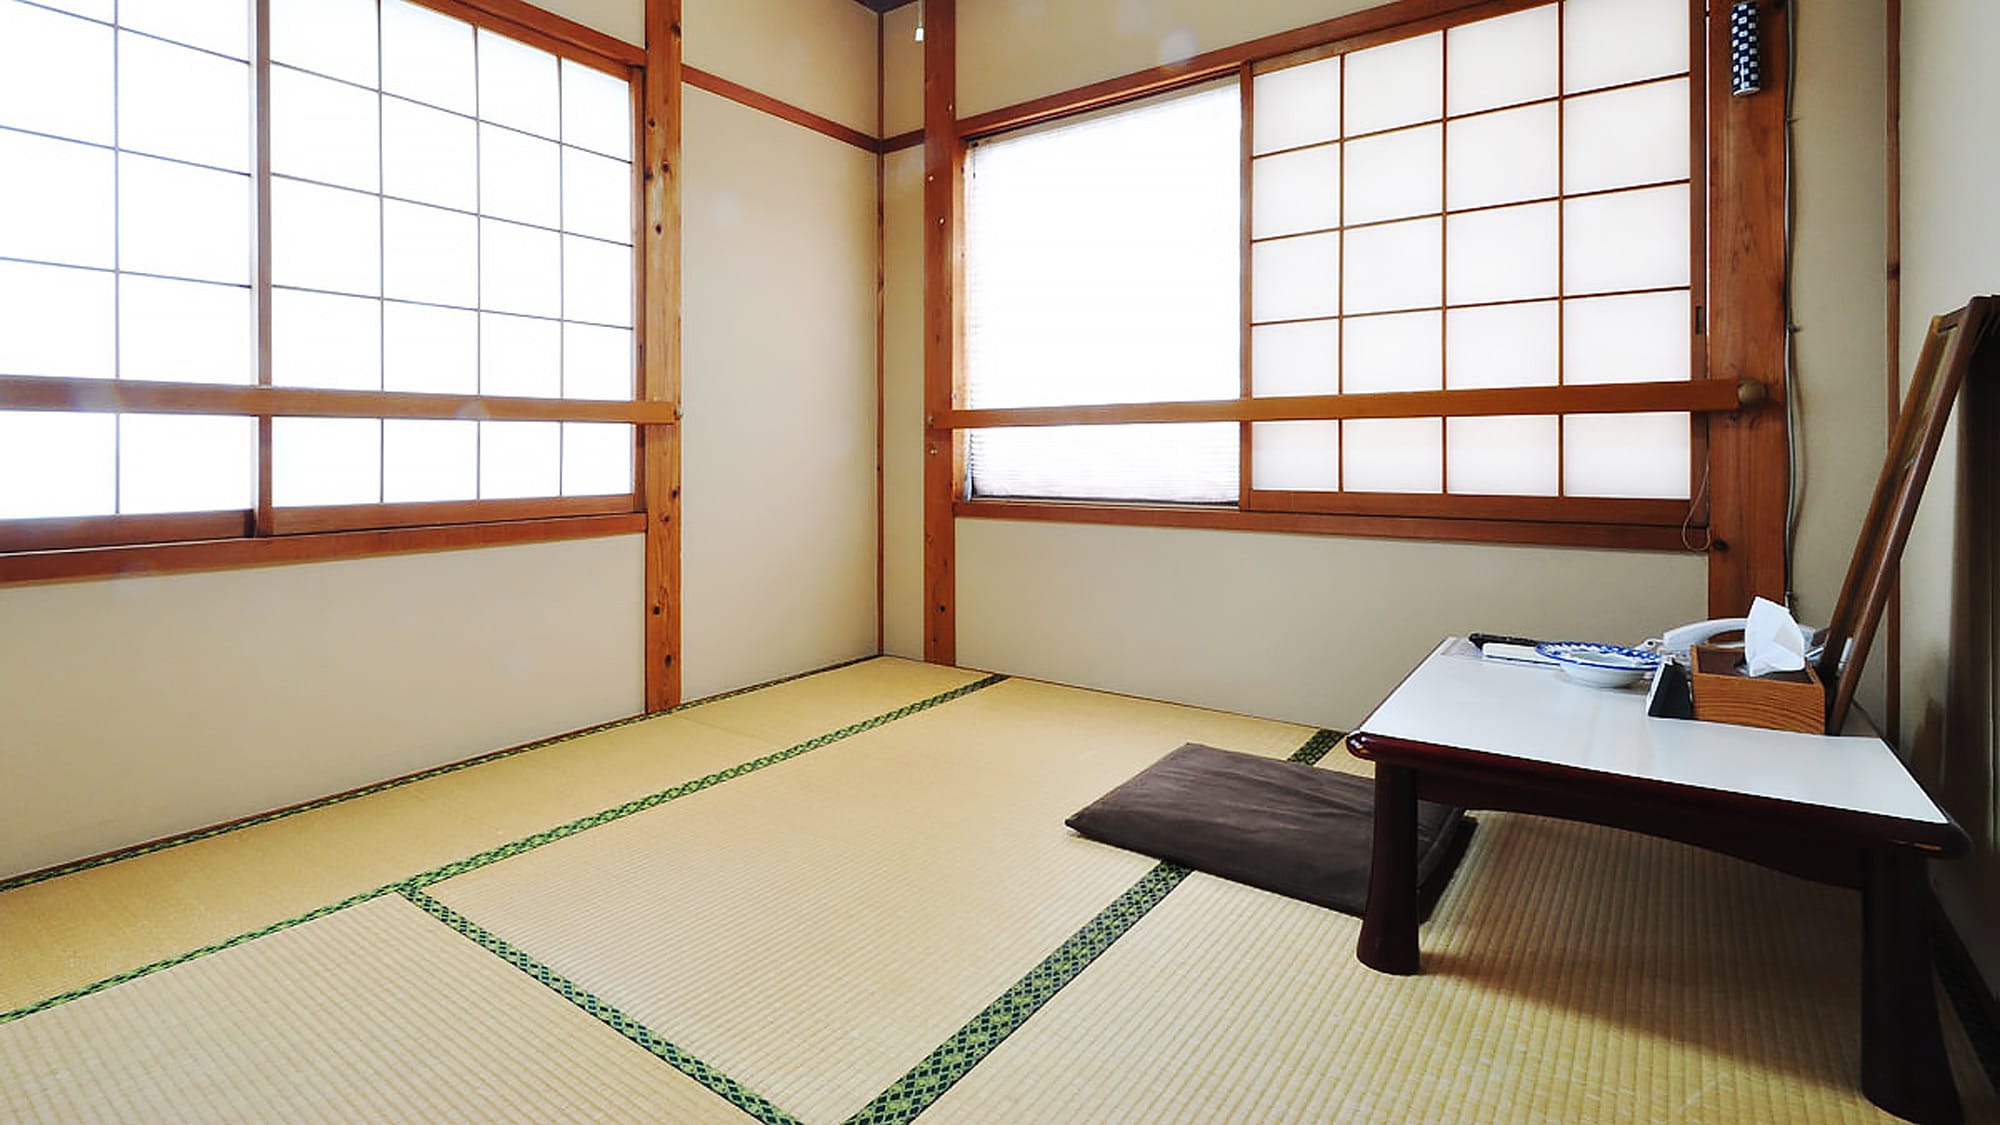 [ห้องสไตล์ญี่ปุ่น 4 เสื่อทาทามิ] ห้องสไตล์ญี่ปุ่นที่คุณสามารถผ่อนคลายได้